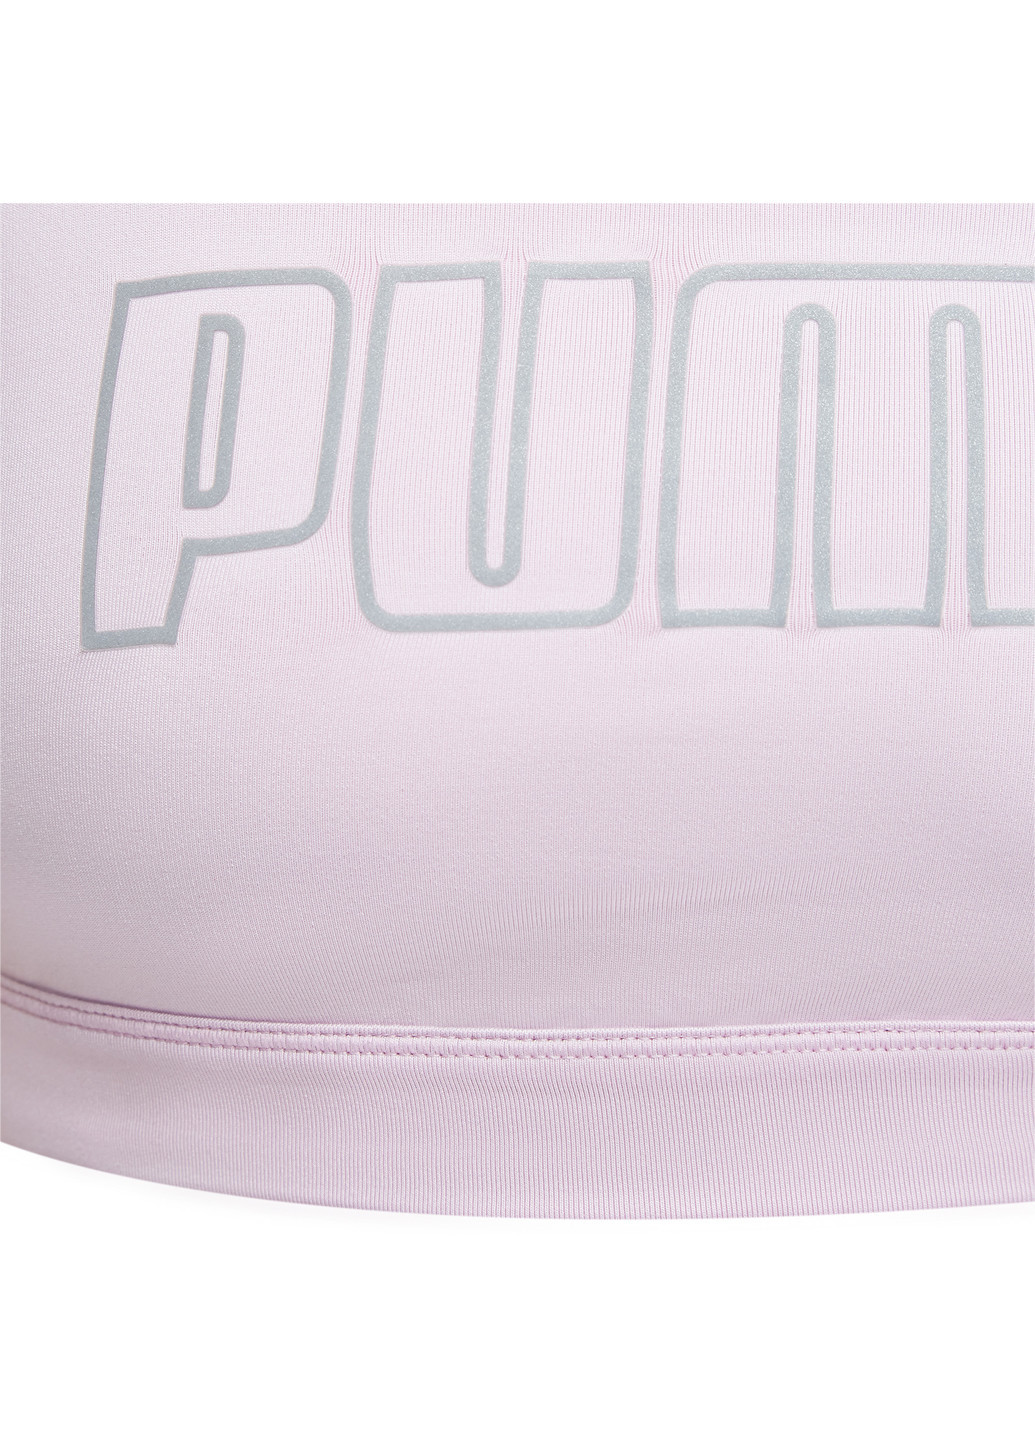 Розовая всесезон топ-бра active bra poly w Puma